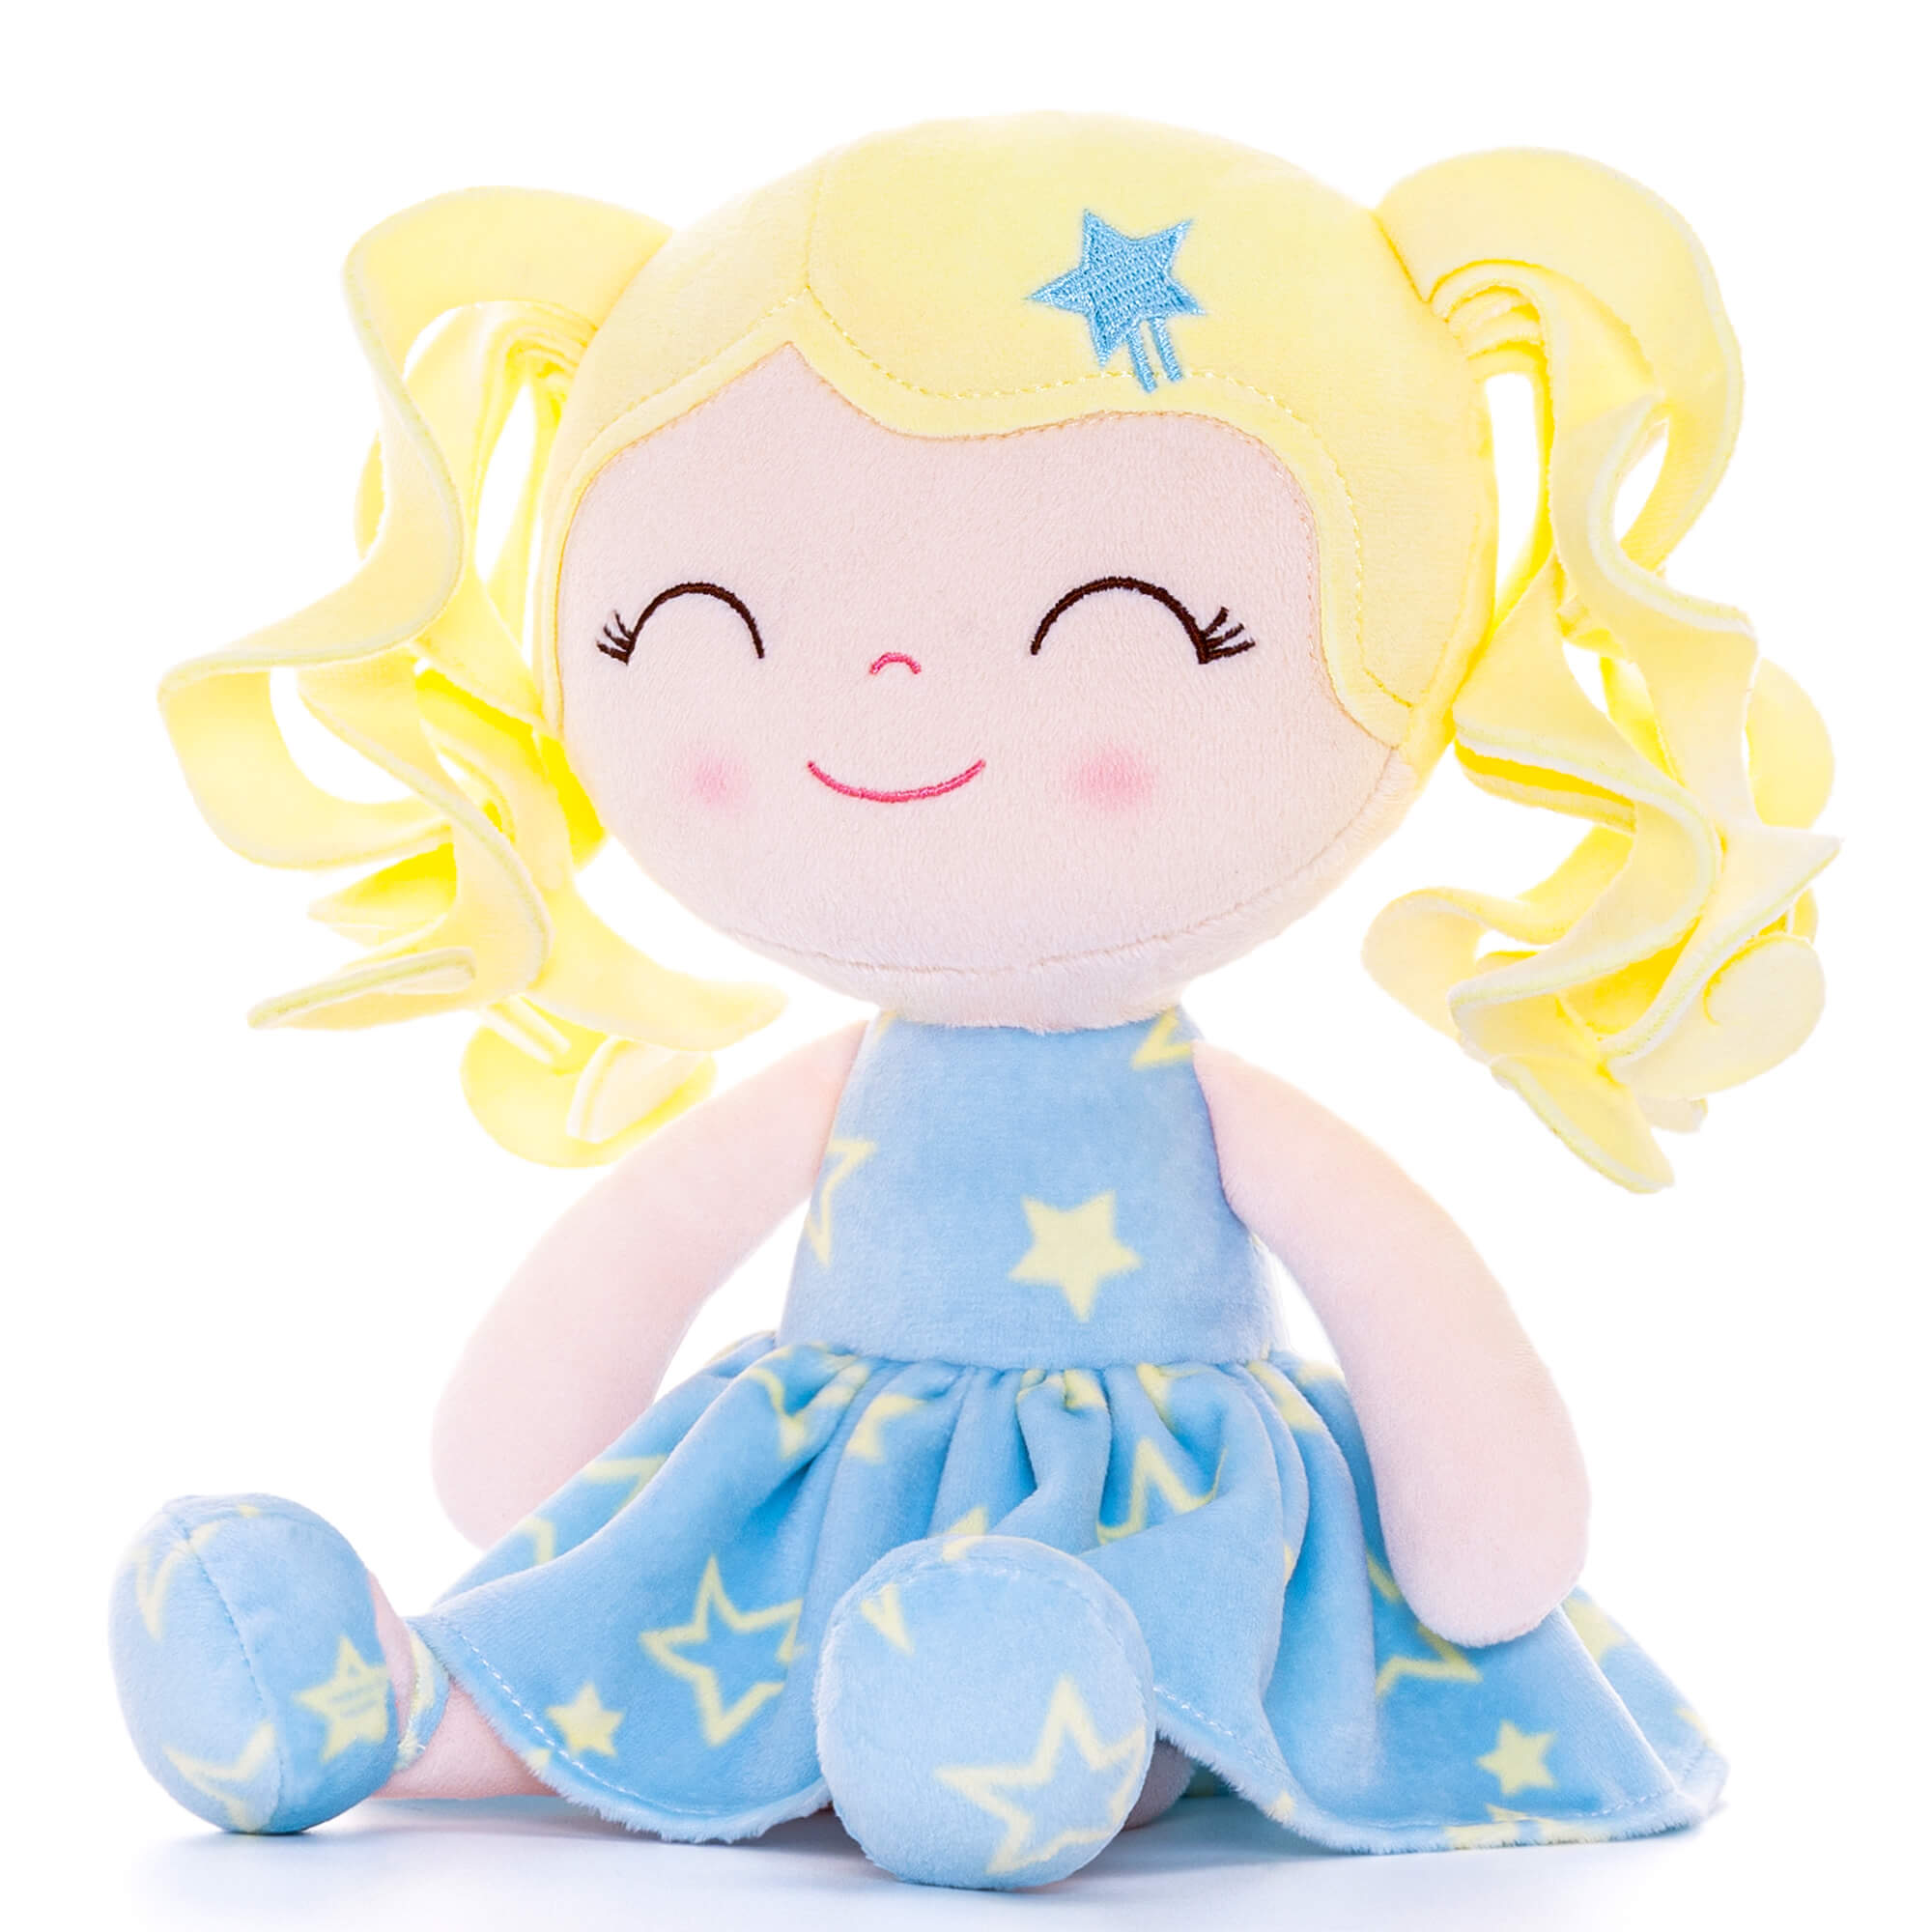 Gloveleya 12-inch Curly Hair Baby Star Dress Doll Bule